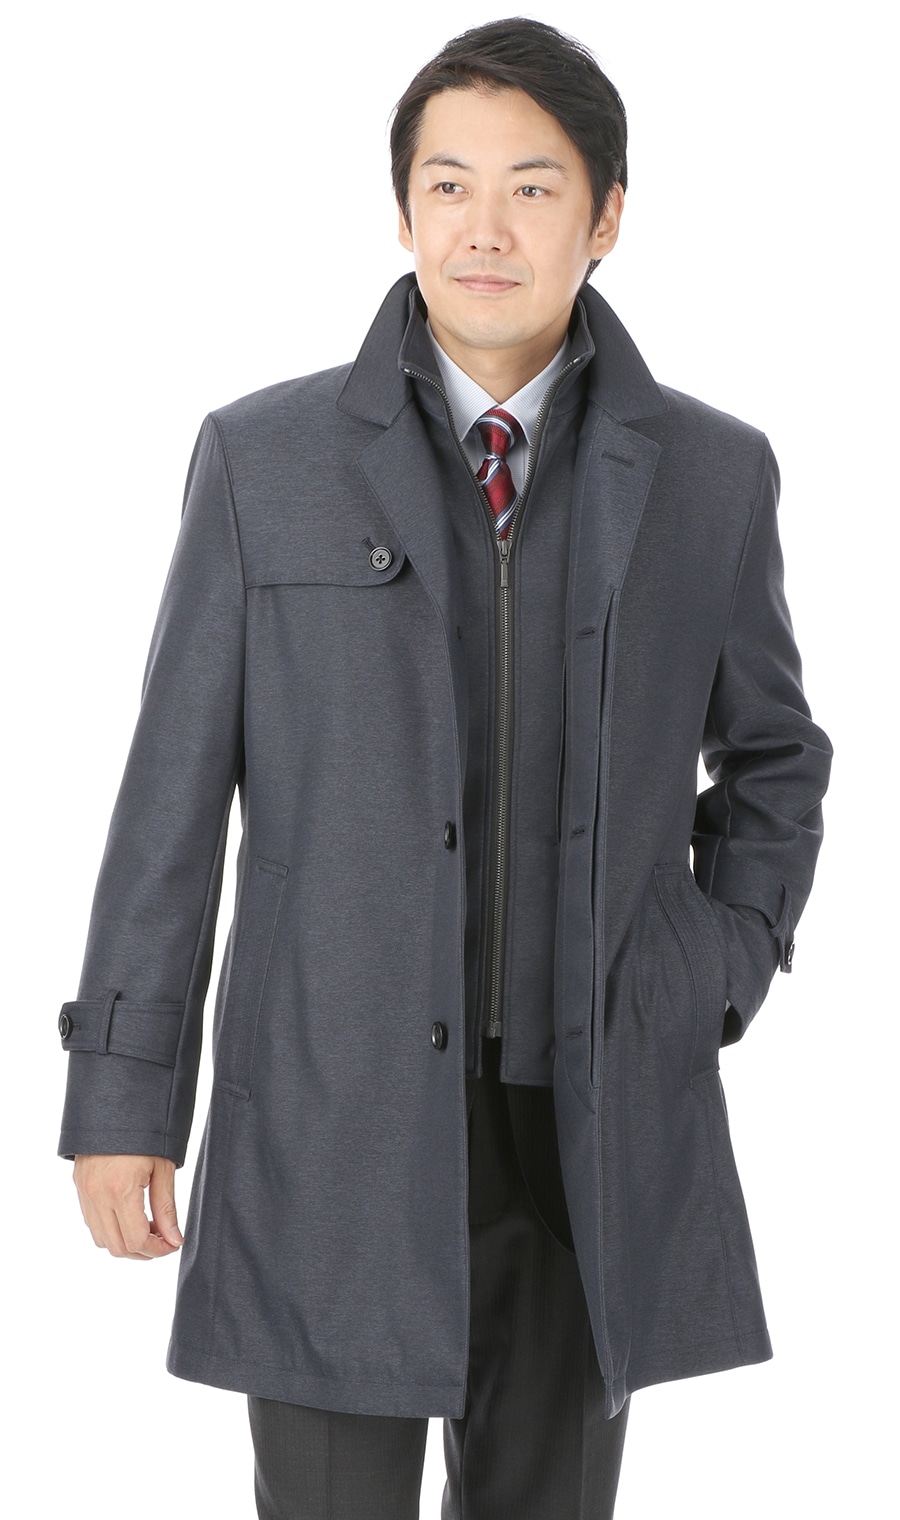 スタンダードコート 合繊 撥水加工 スタンドカラー 11 Regal 紳士服 スーツ販売数世界no 1 洋服の青山 公式通販